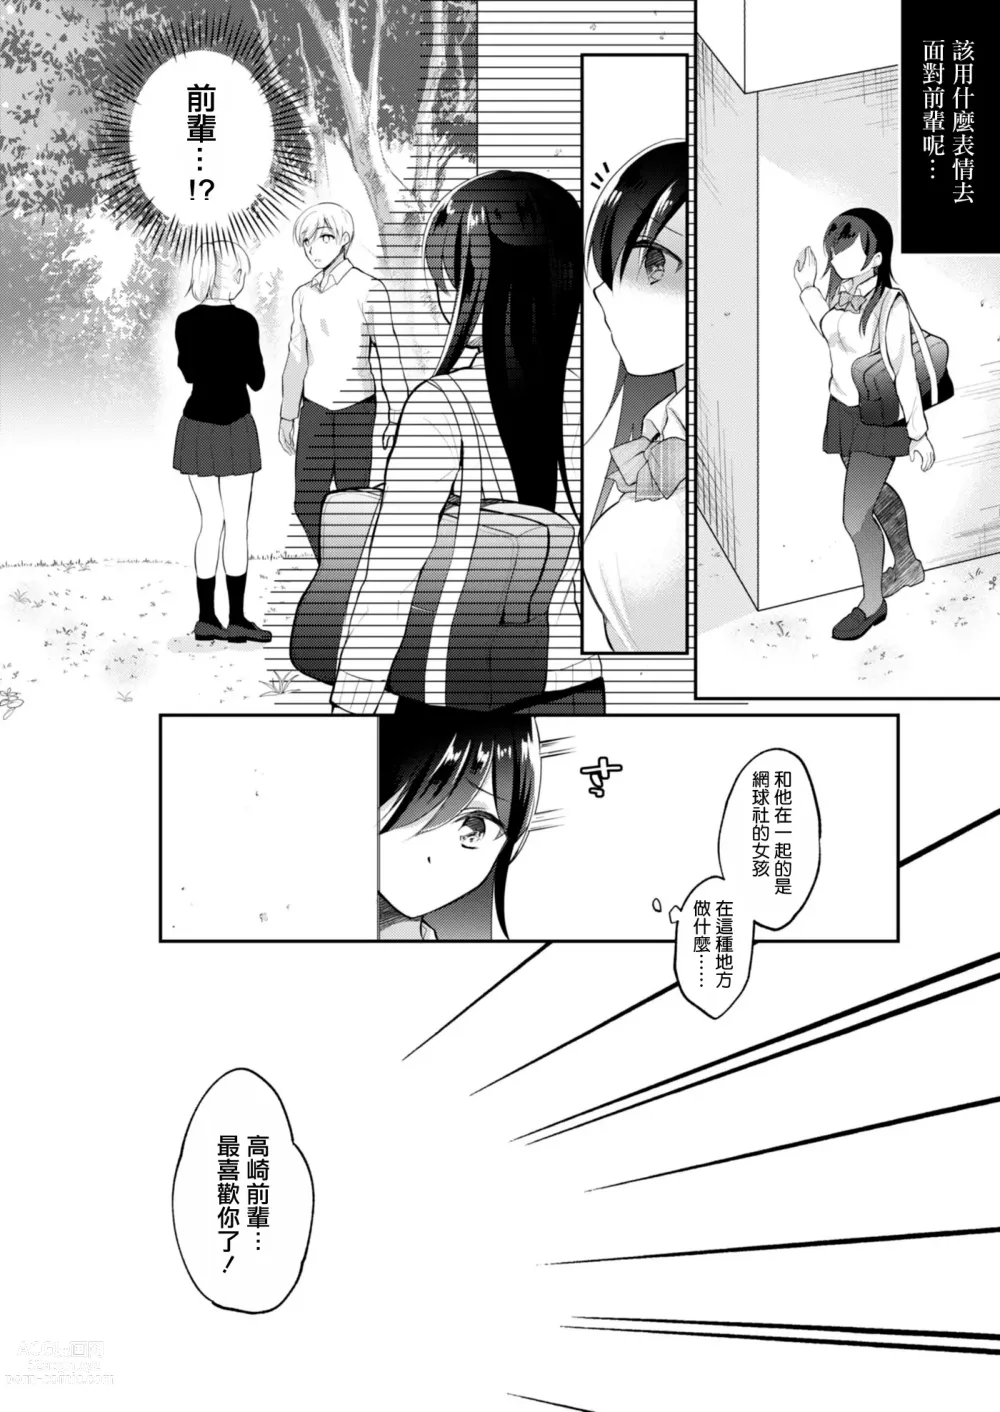 Page 11 of manga Netorare JK Kanojo File.4 Fuyu no Owari no Binetsu Kouhen